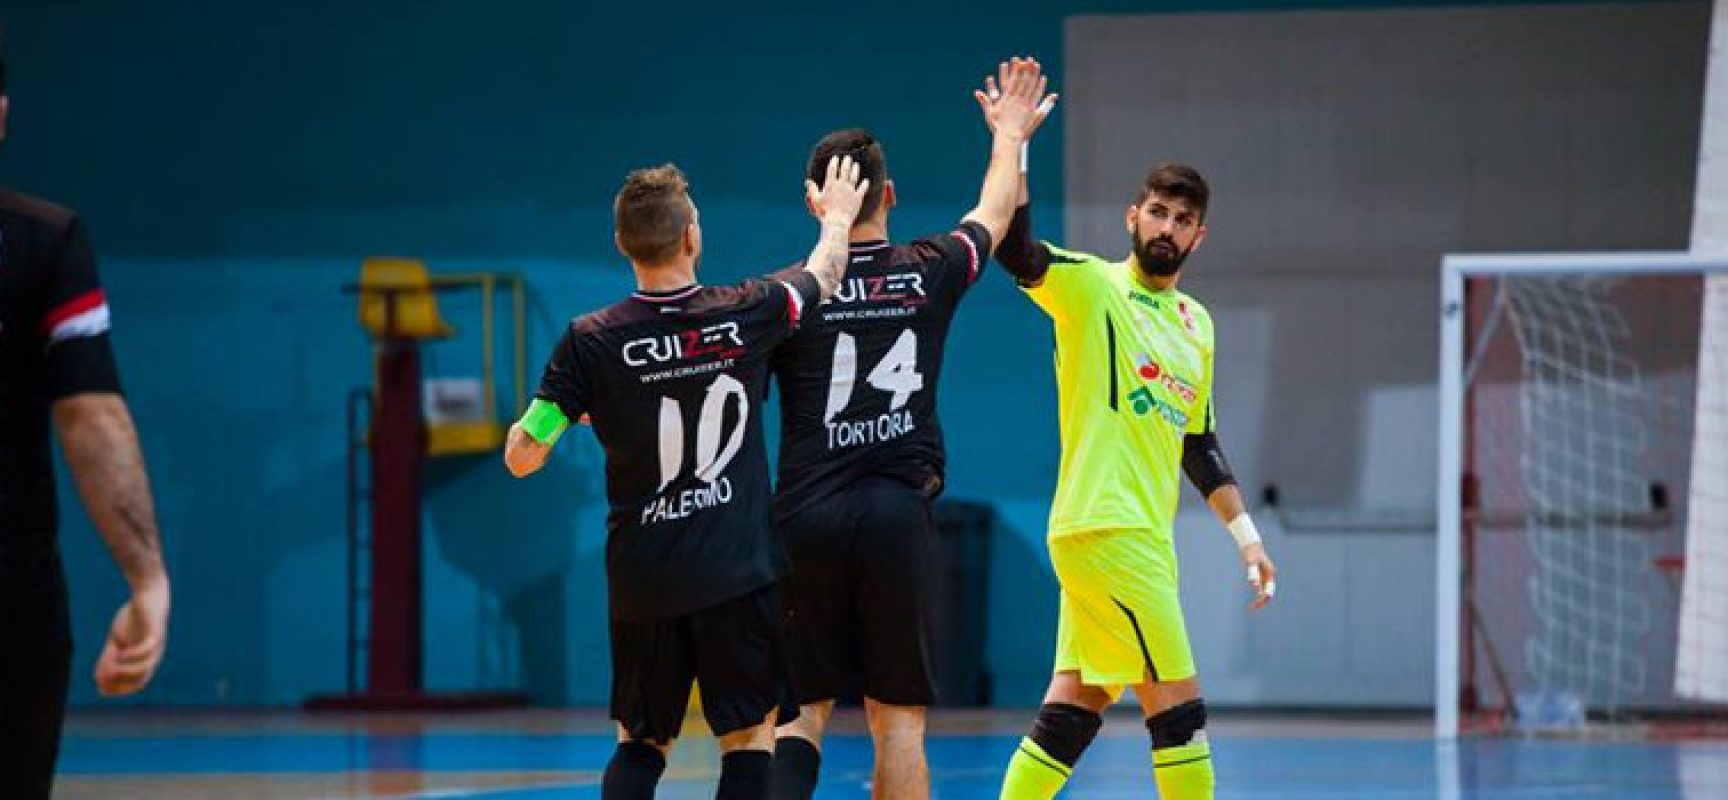 Futsal serie C1: Diaz di scena a Carovigno, Nettuno rende visita al Polignano